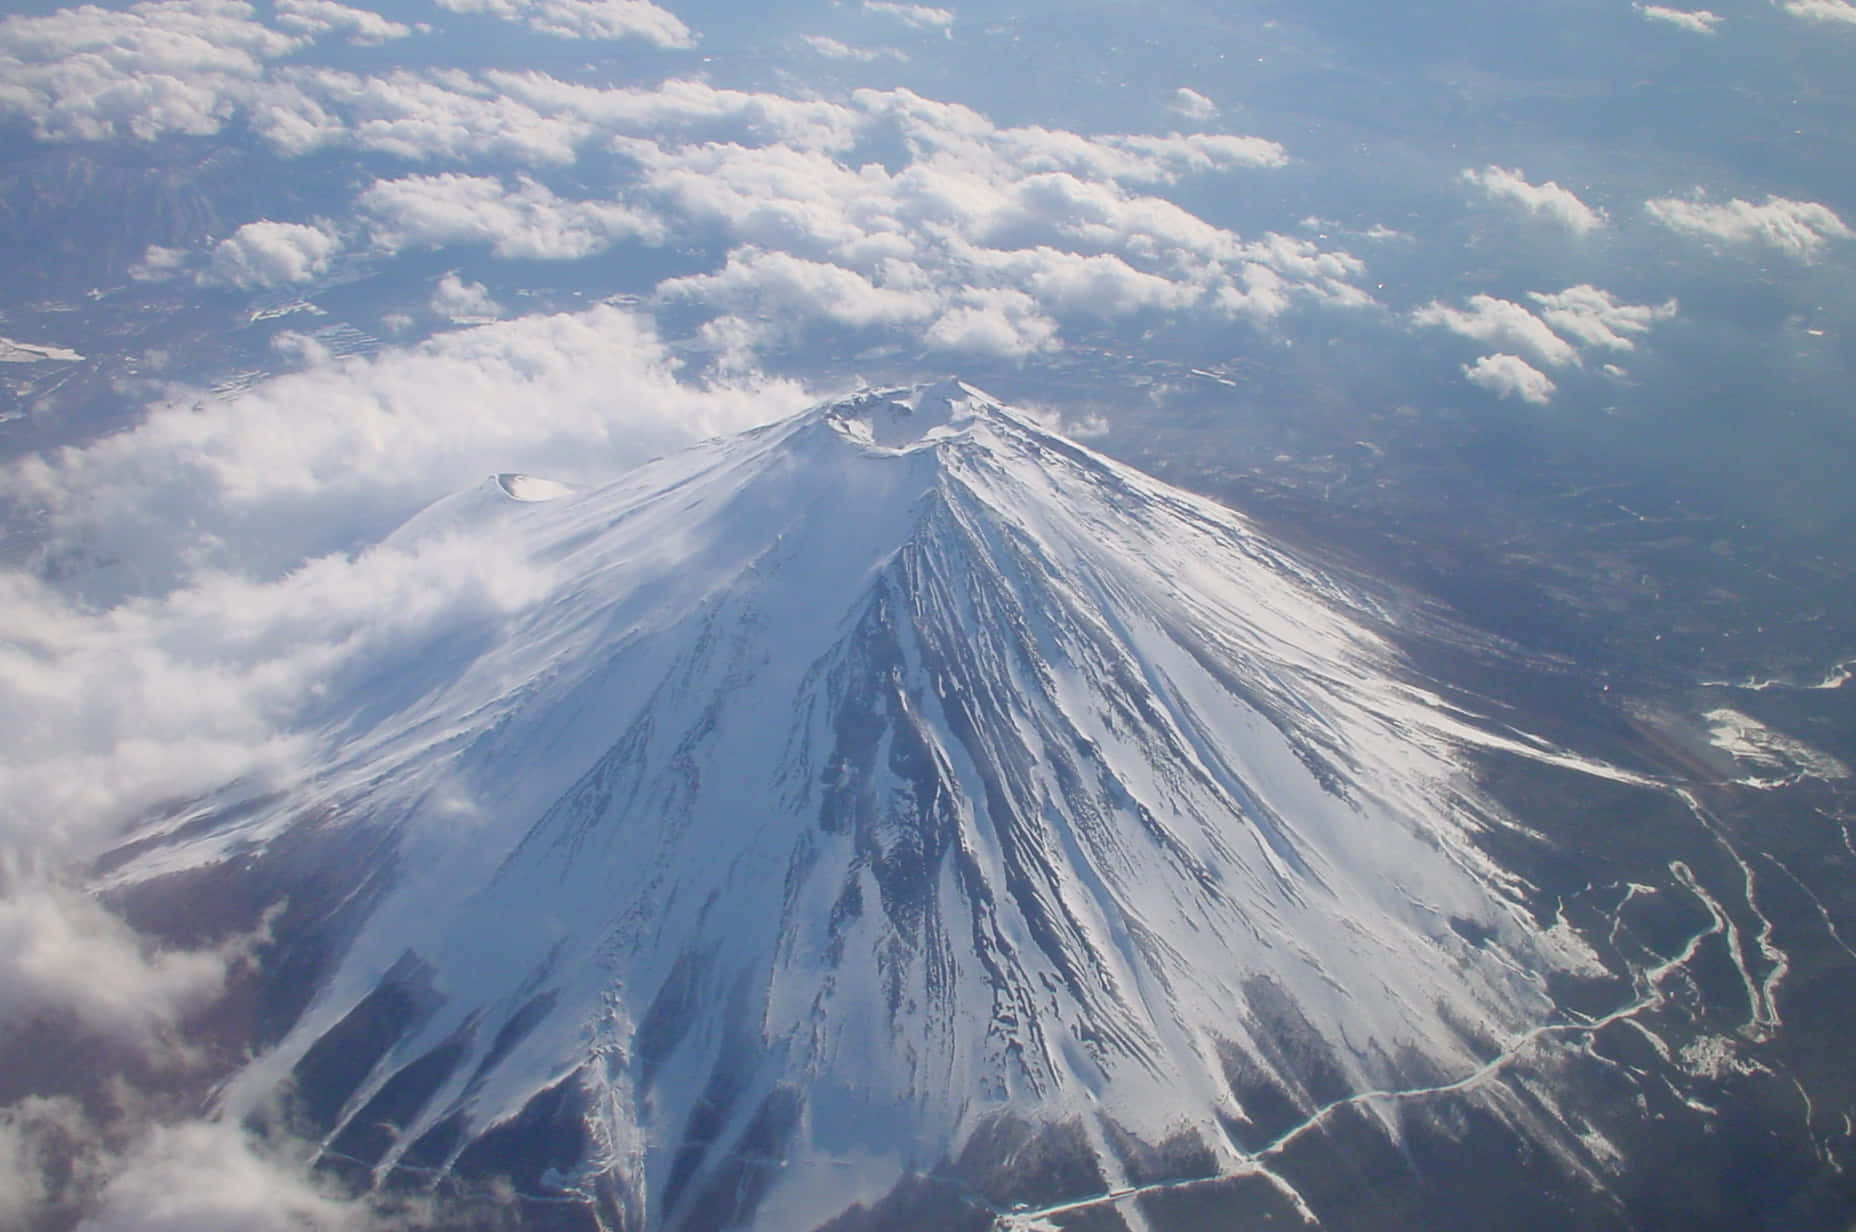 Enjoying a beautiful view of Mt. Fuji, Japan